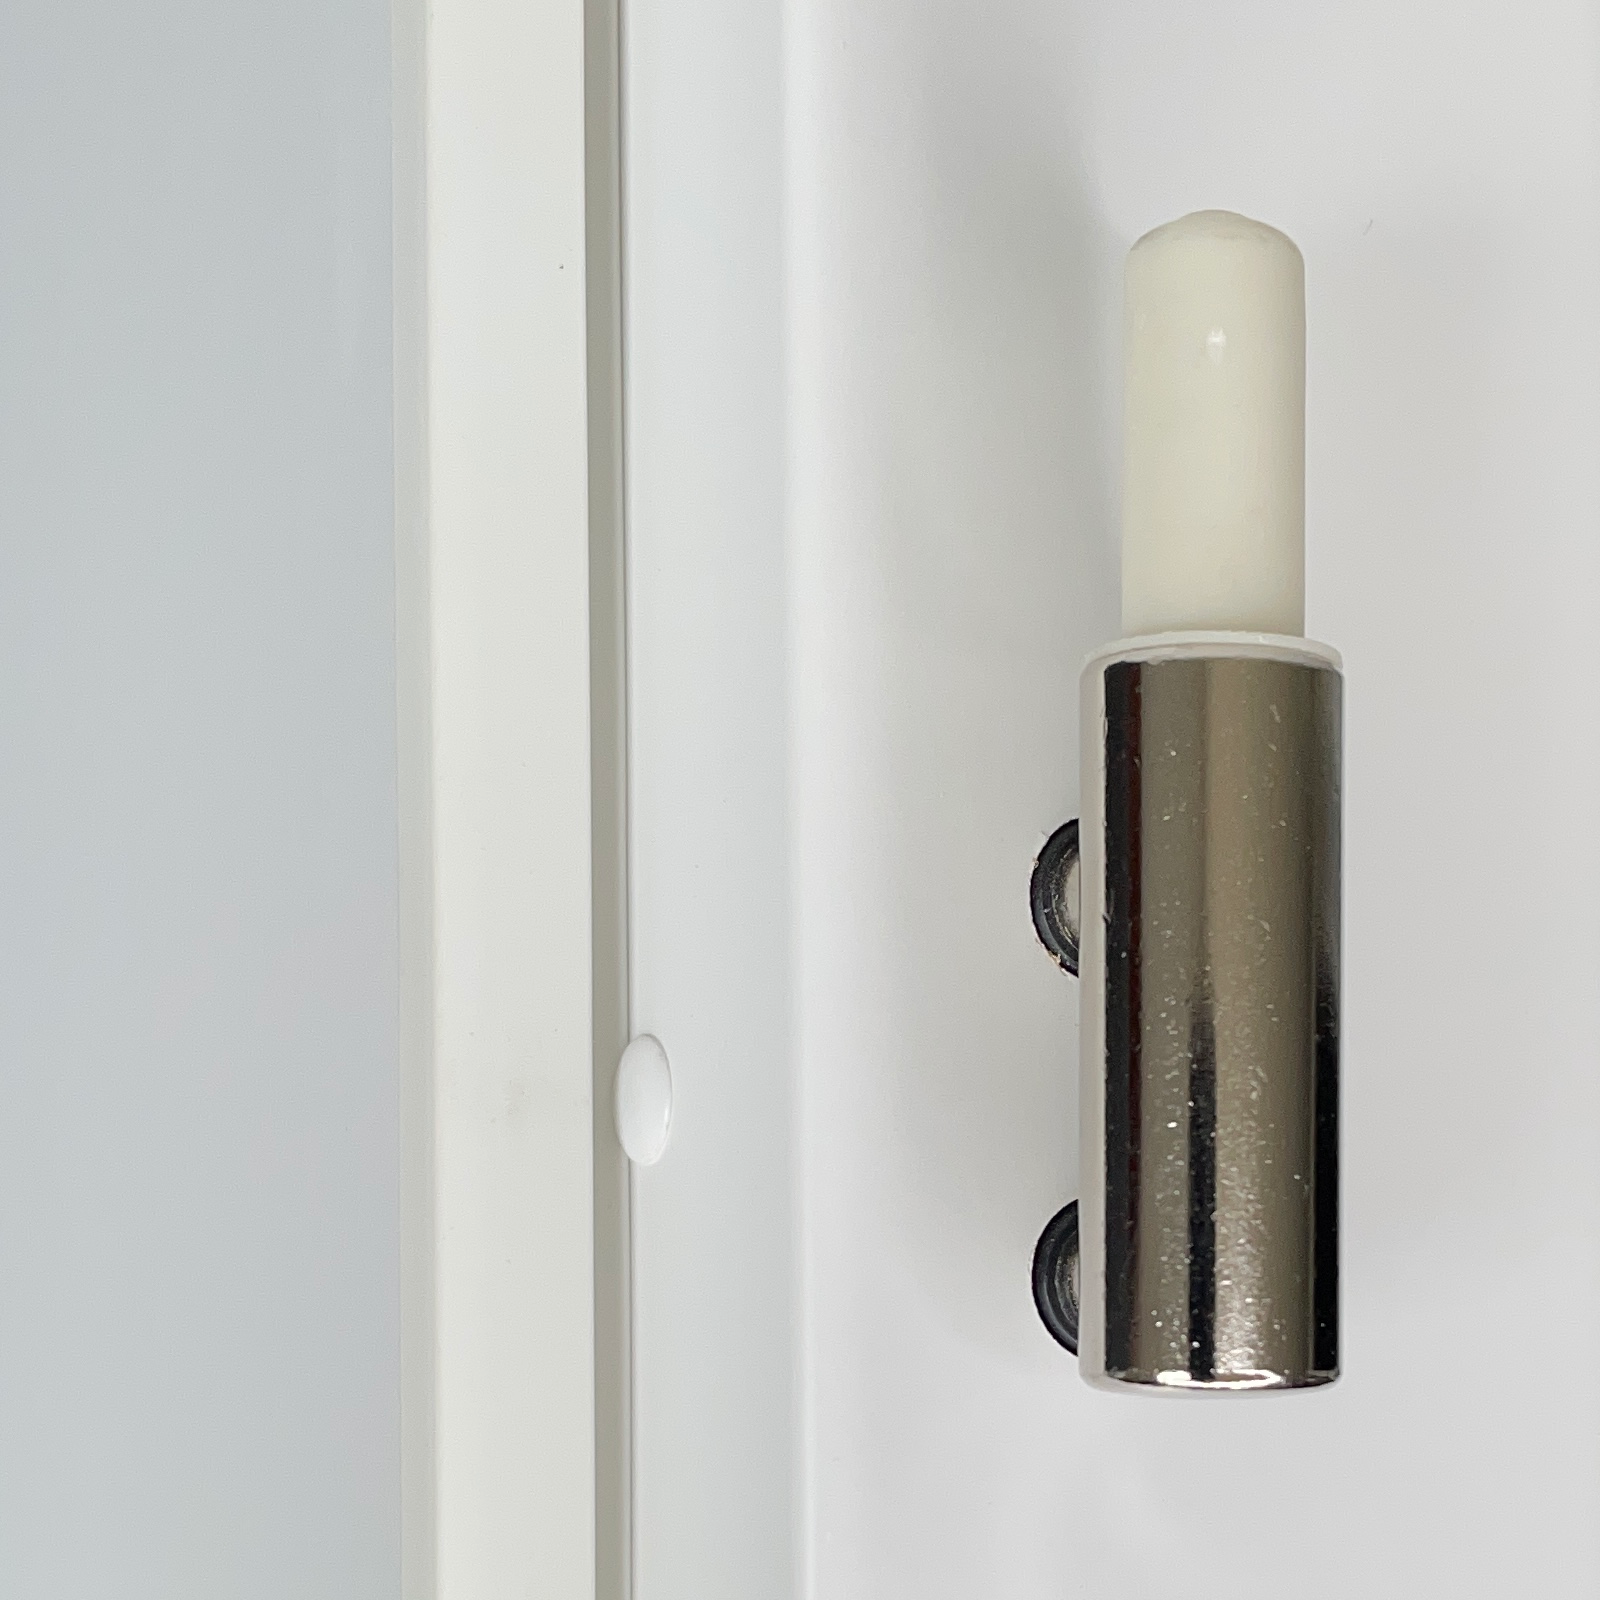 Zimmertür mit Zarge brillant-weiß 3 Rillen aufrecht Designkante - Modell Designtür VM33